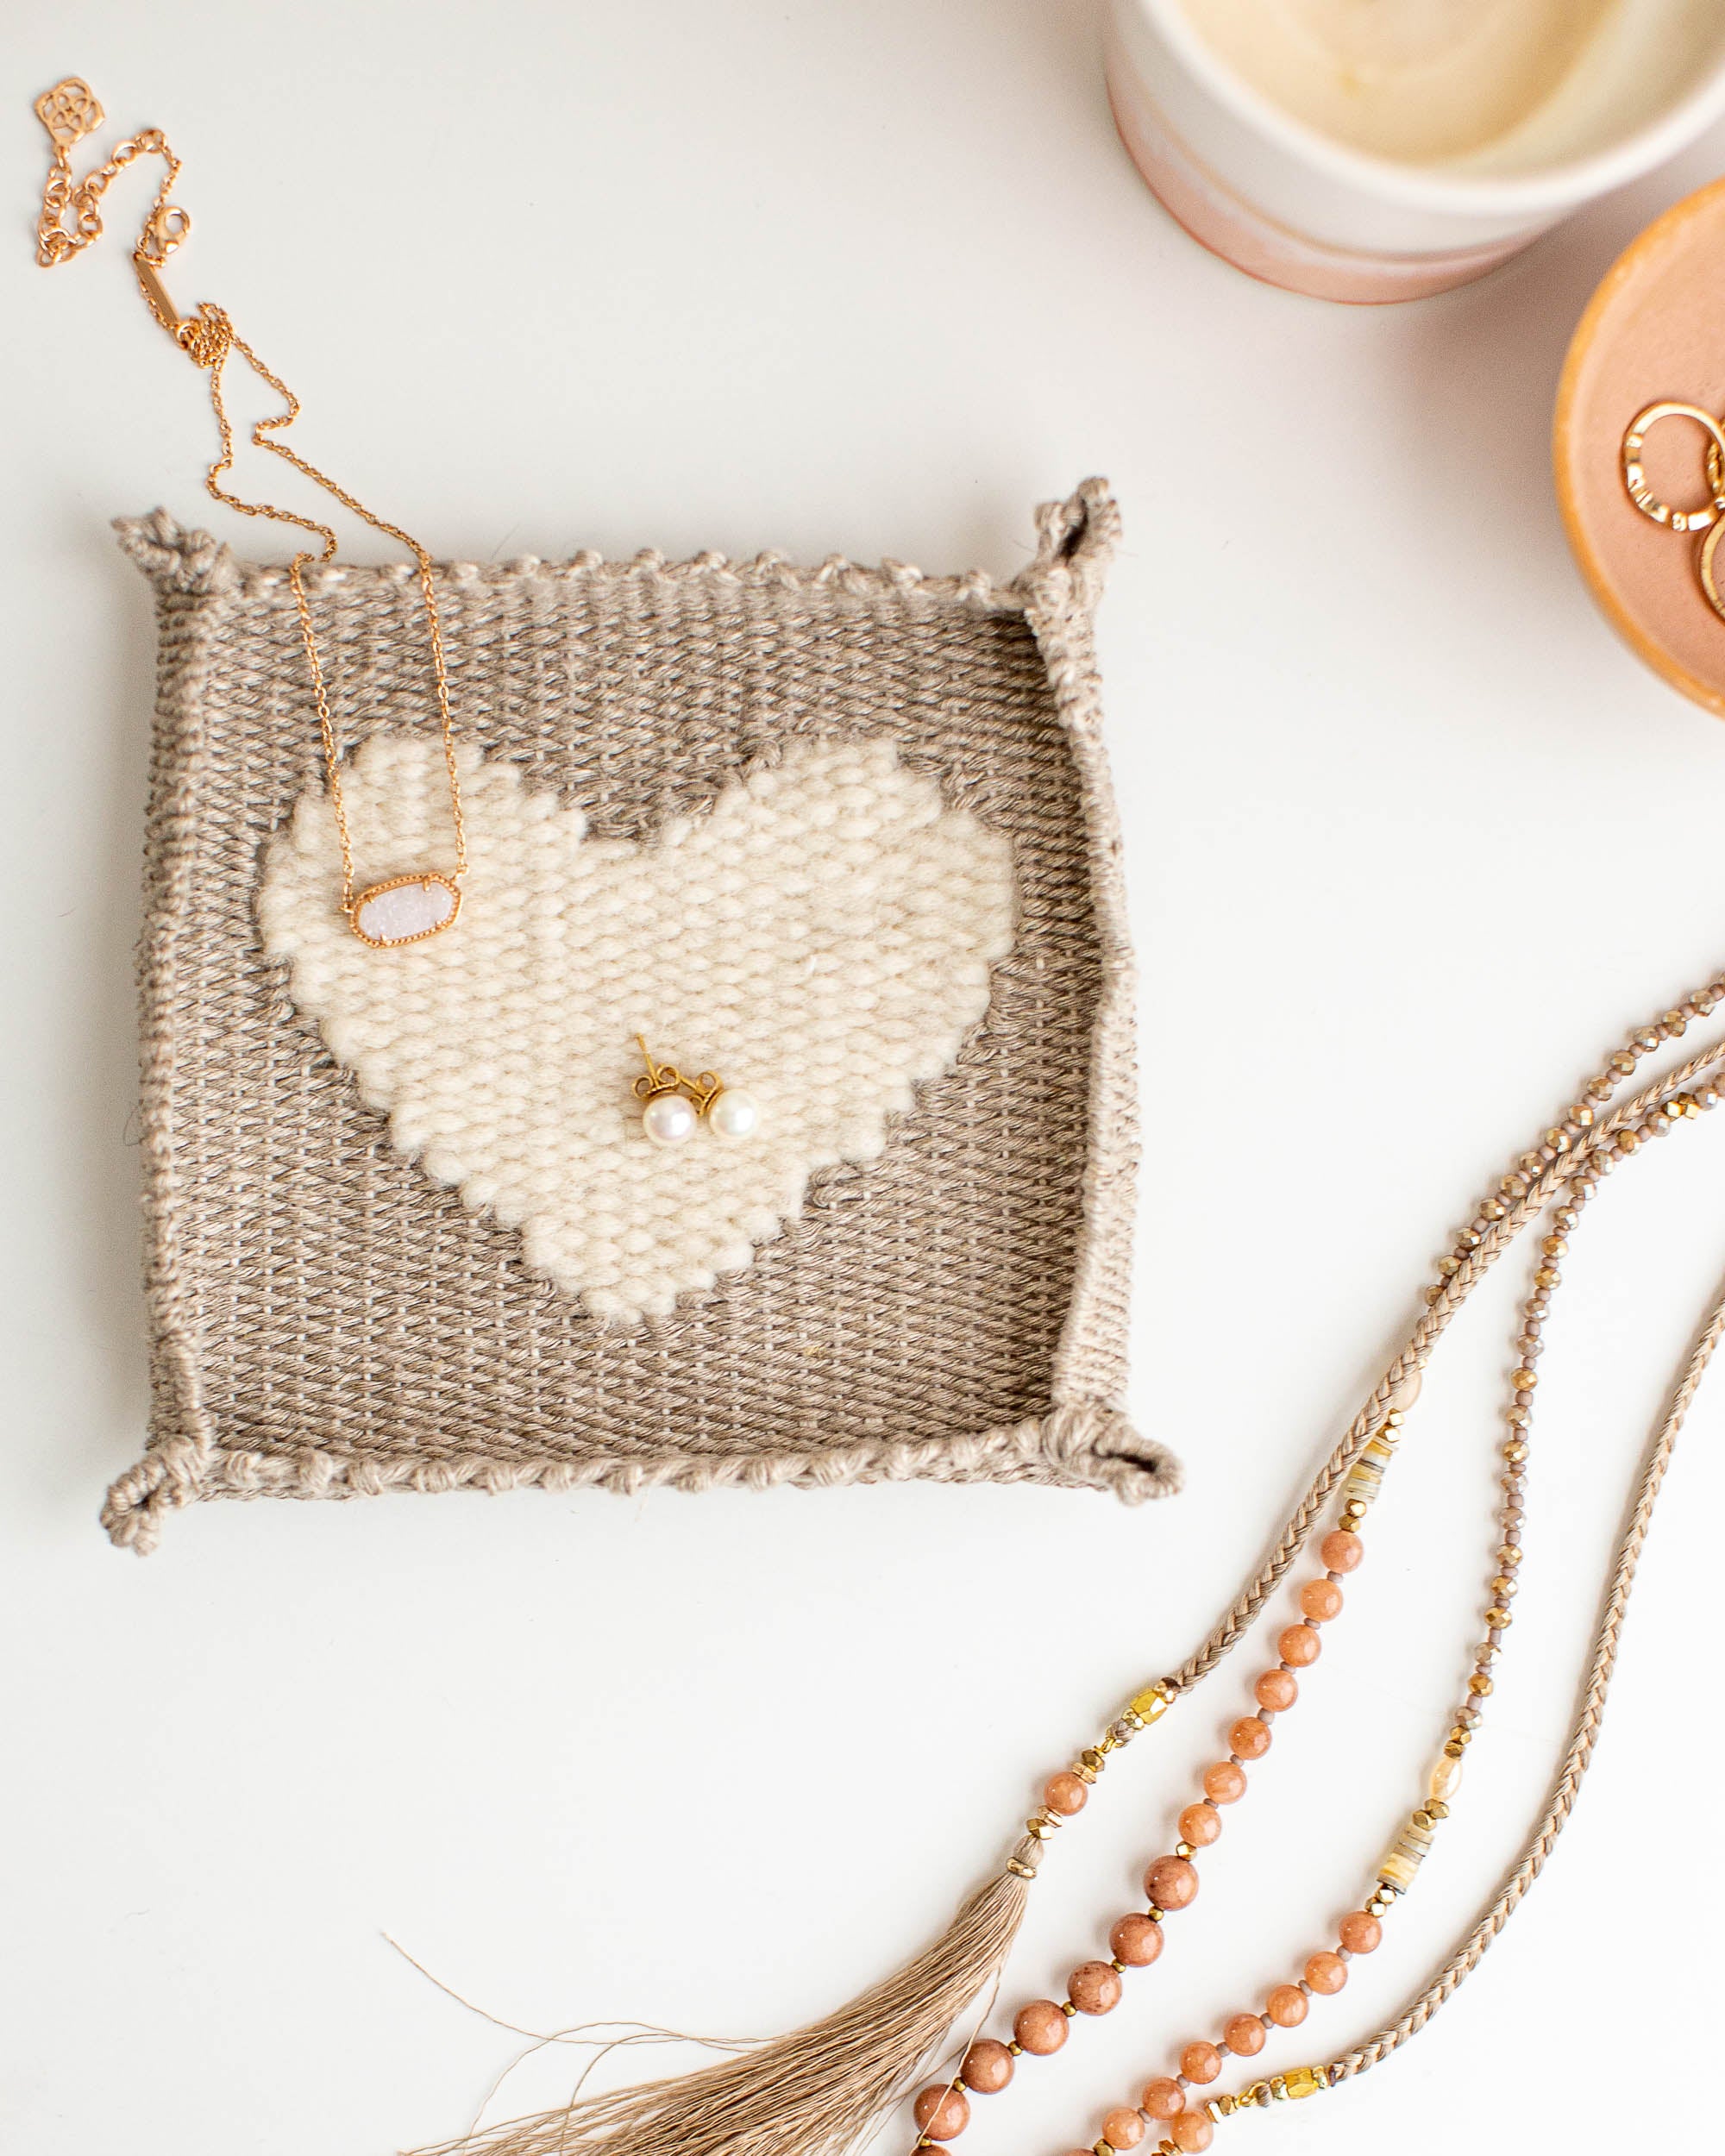 Woven Heart Jewelry Dish Pattern and Kits